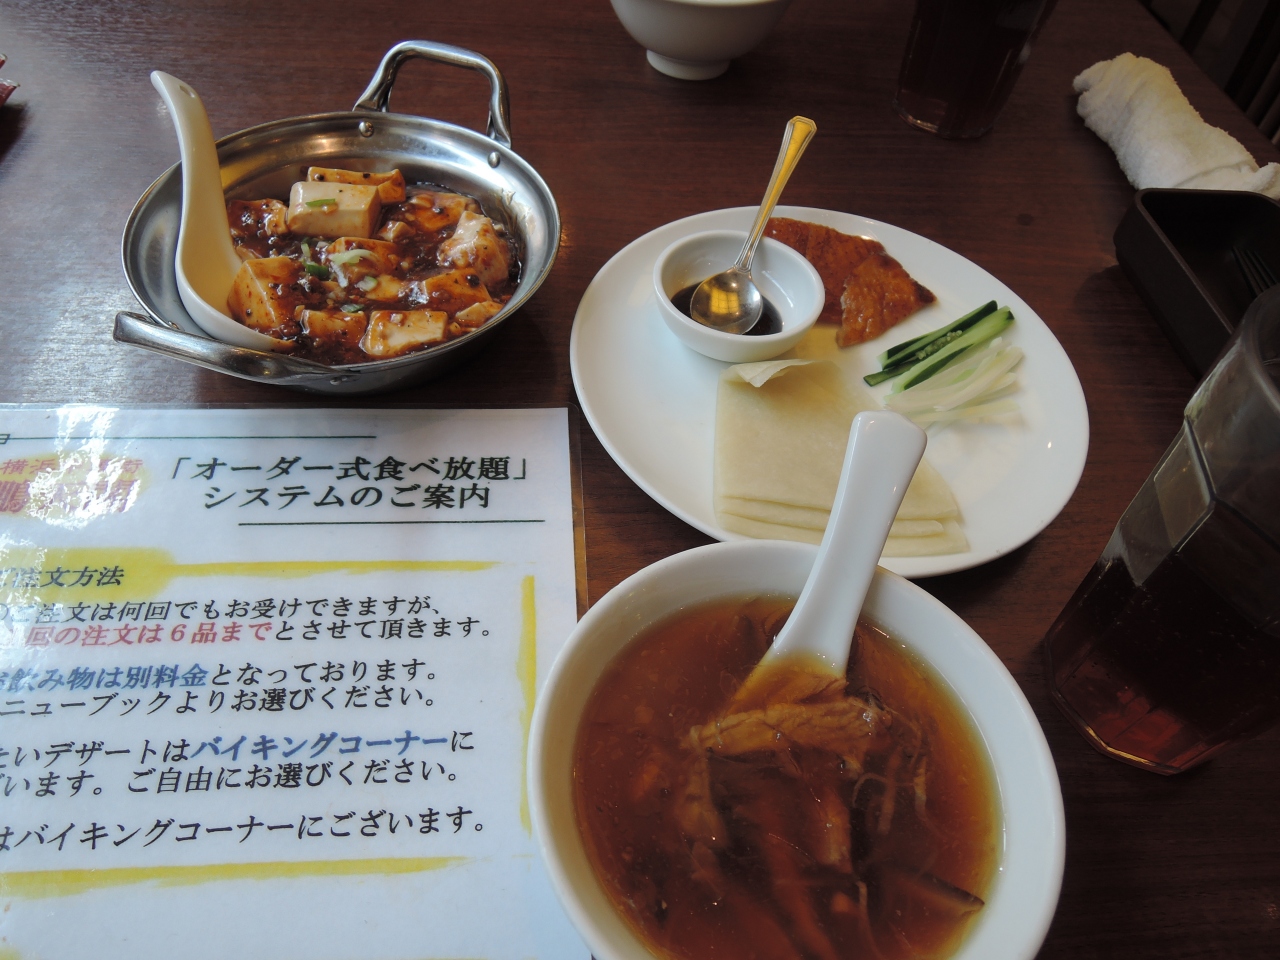 食べ放題 Part1 横浜 神奈川県 の旅行記 ブログ By メンデル親父さん フォートラベル